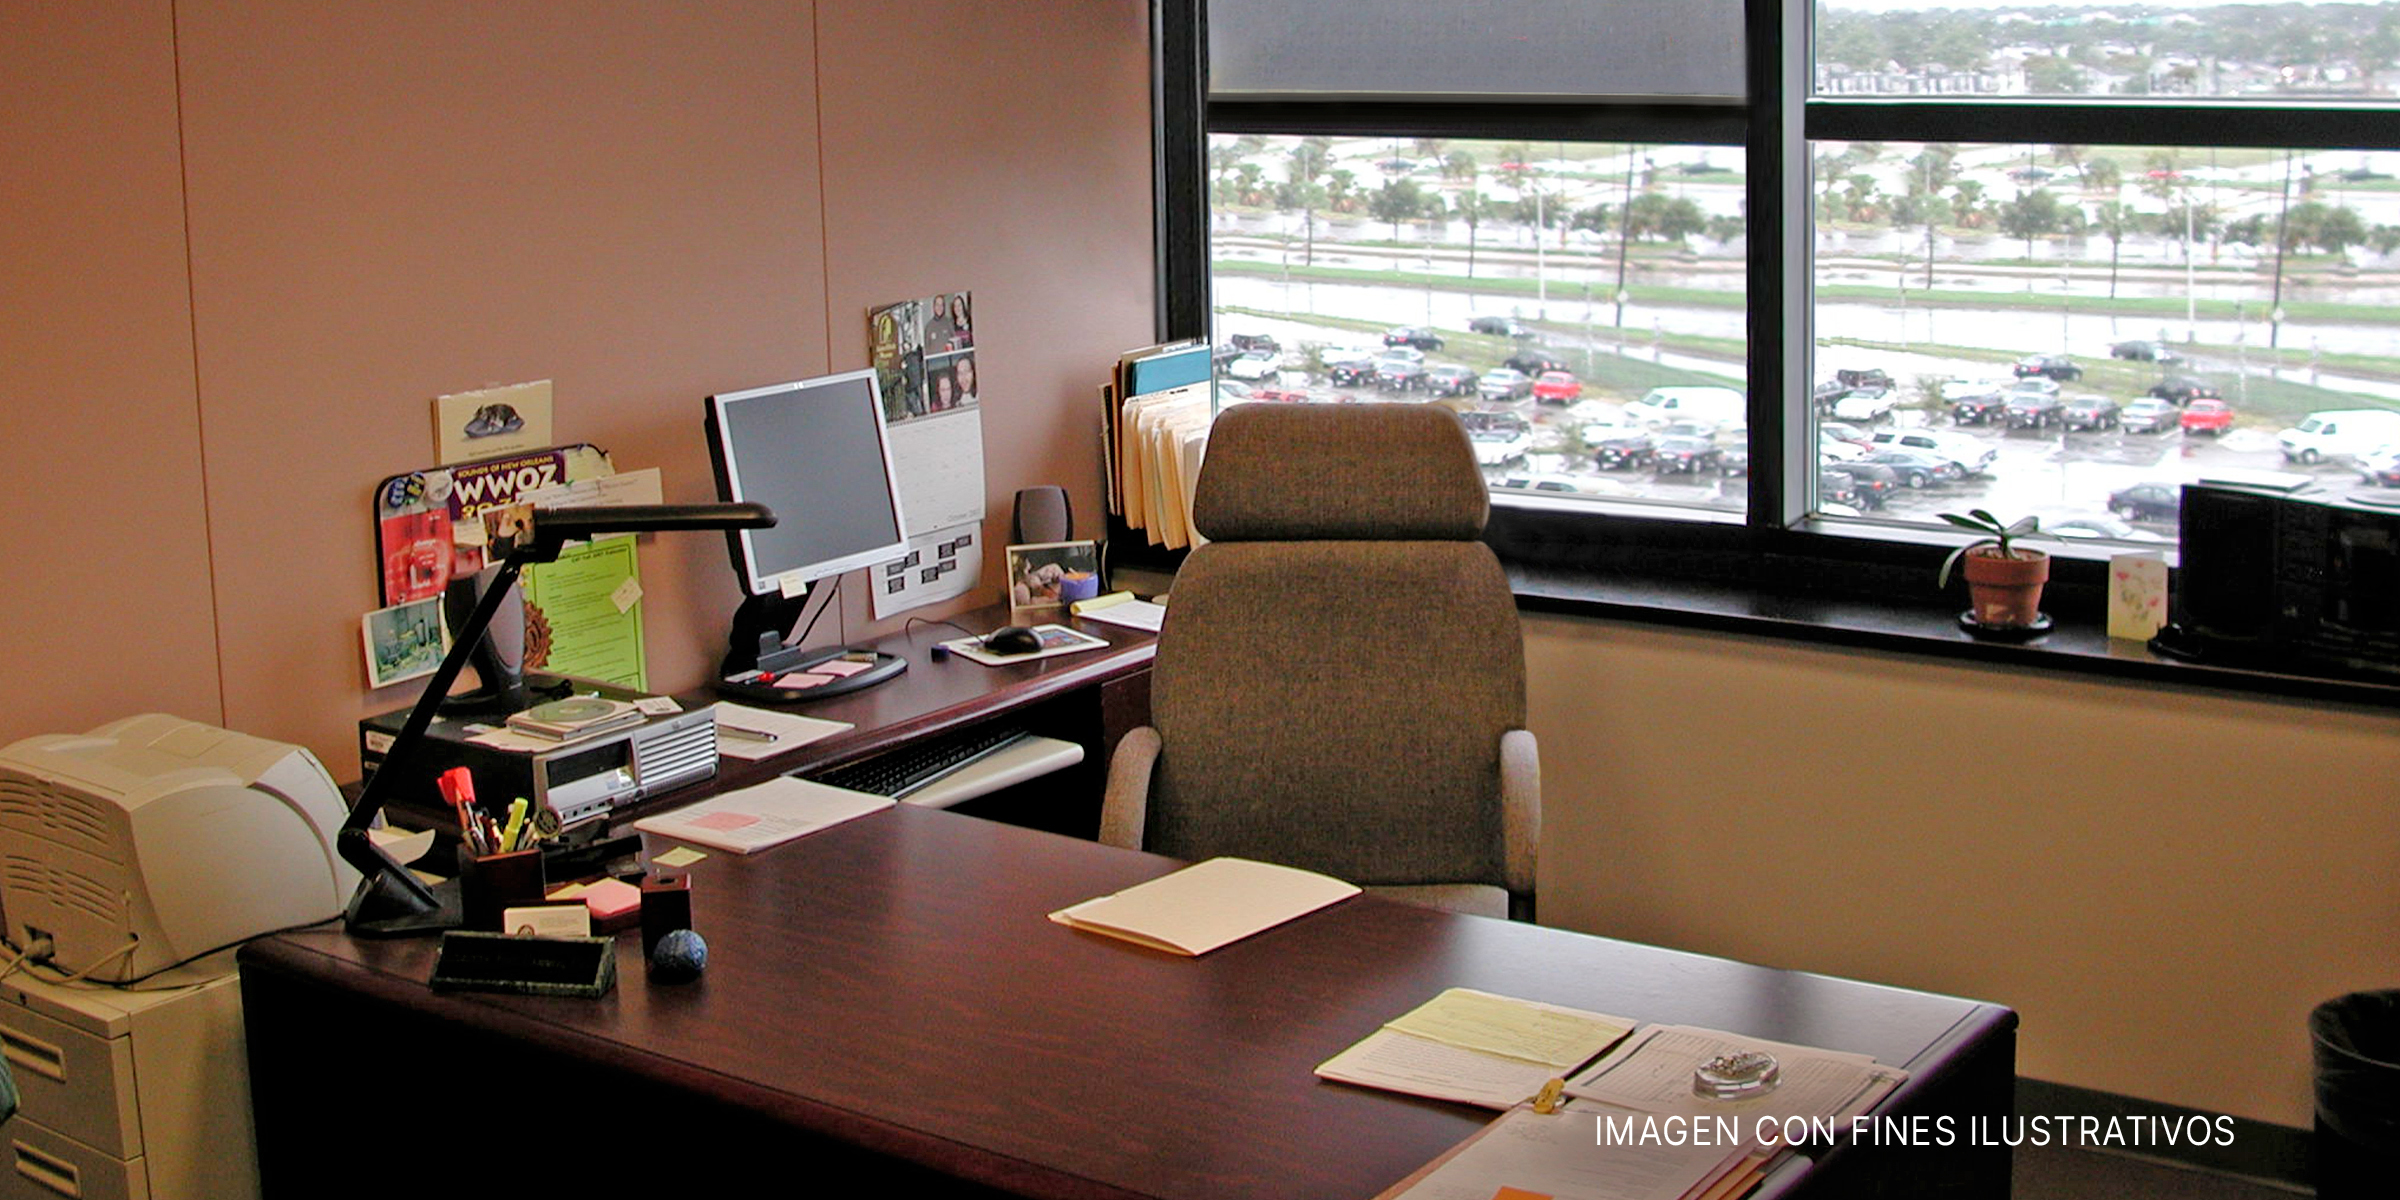 Una oficina empresarial | Foto: flickr.com/Editor B (CC BY 2.0)